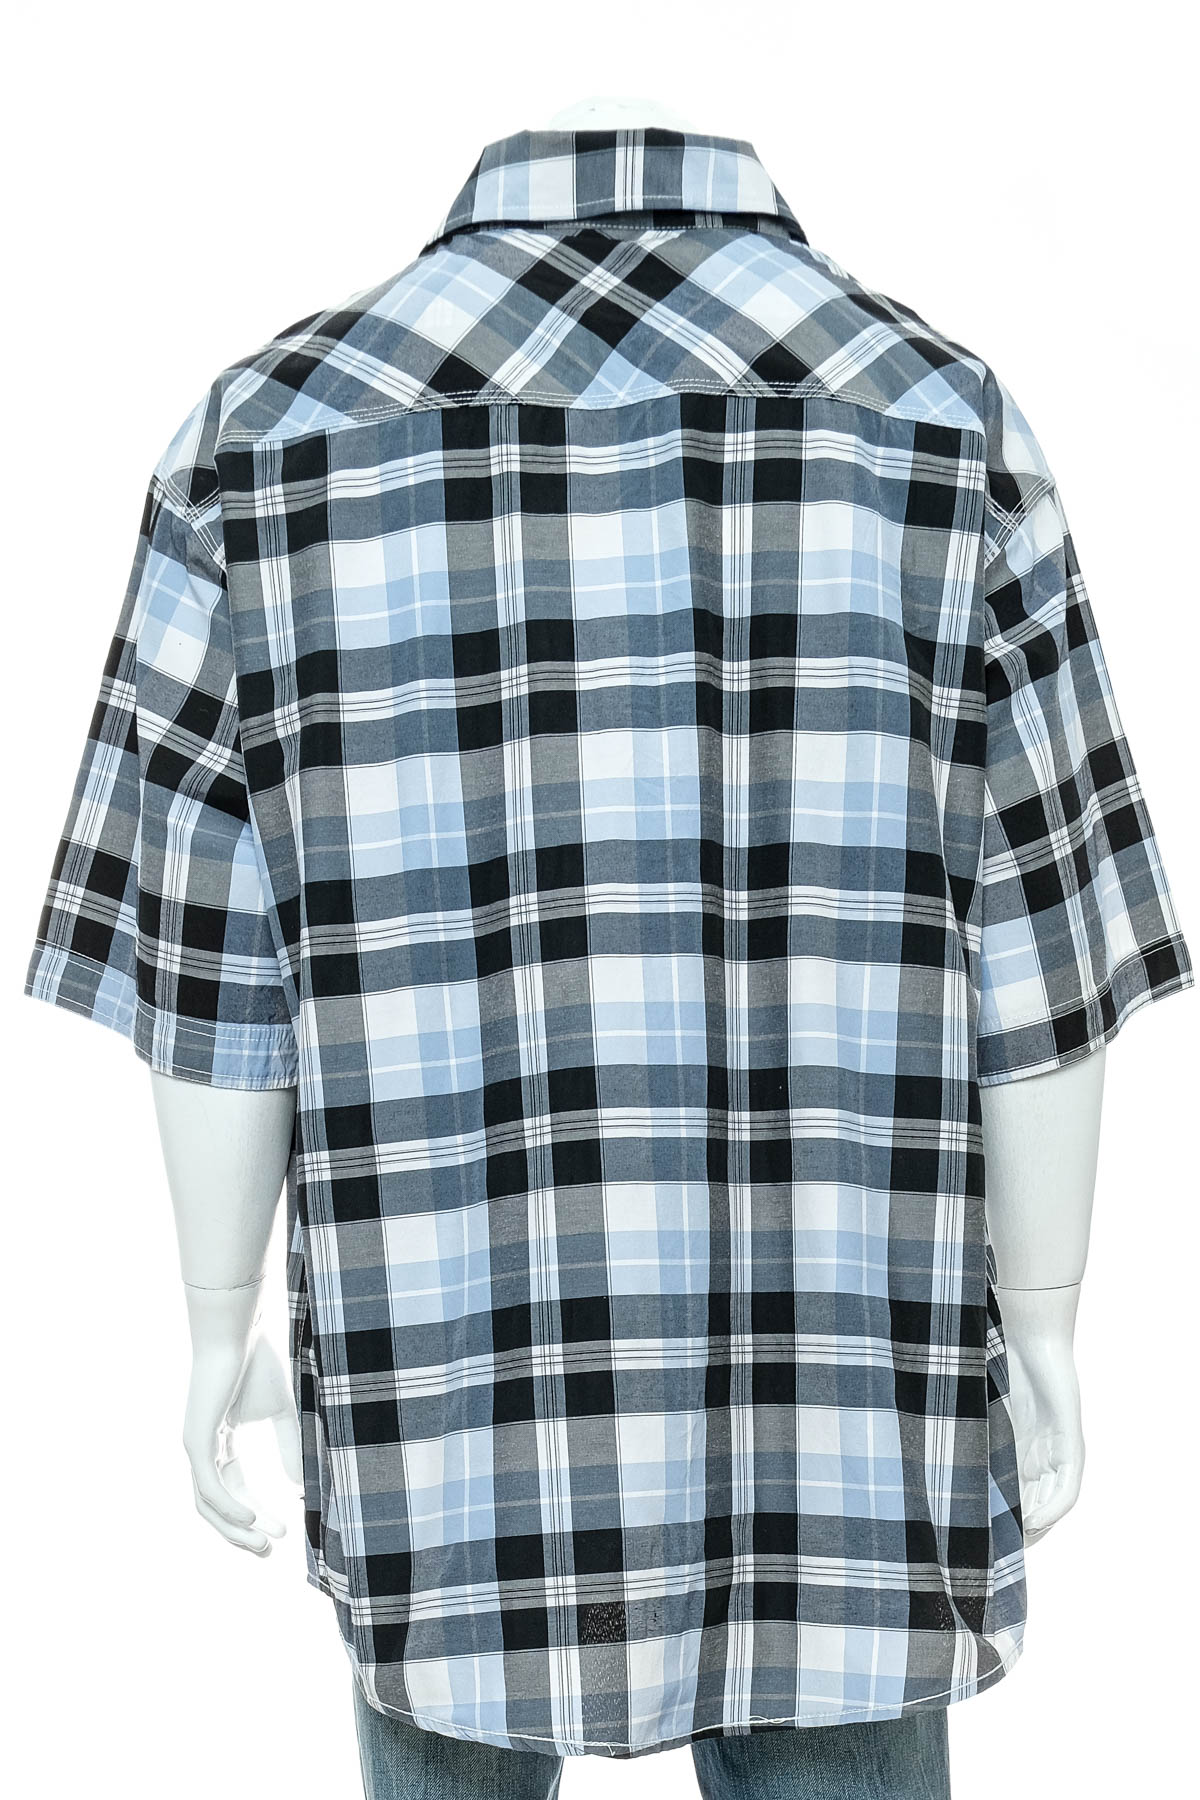 Men's shirt - Ecko Unltd - 1